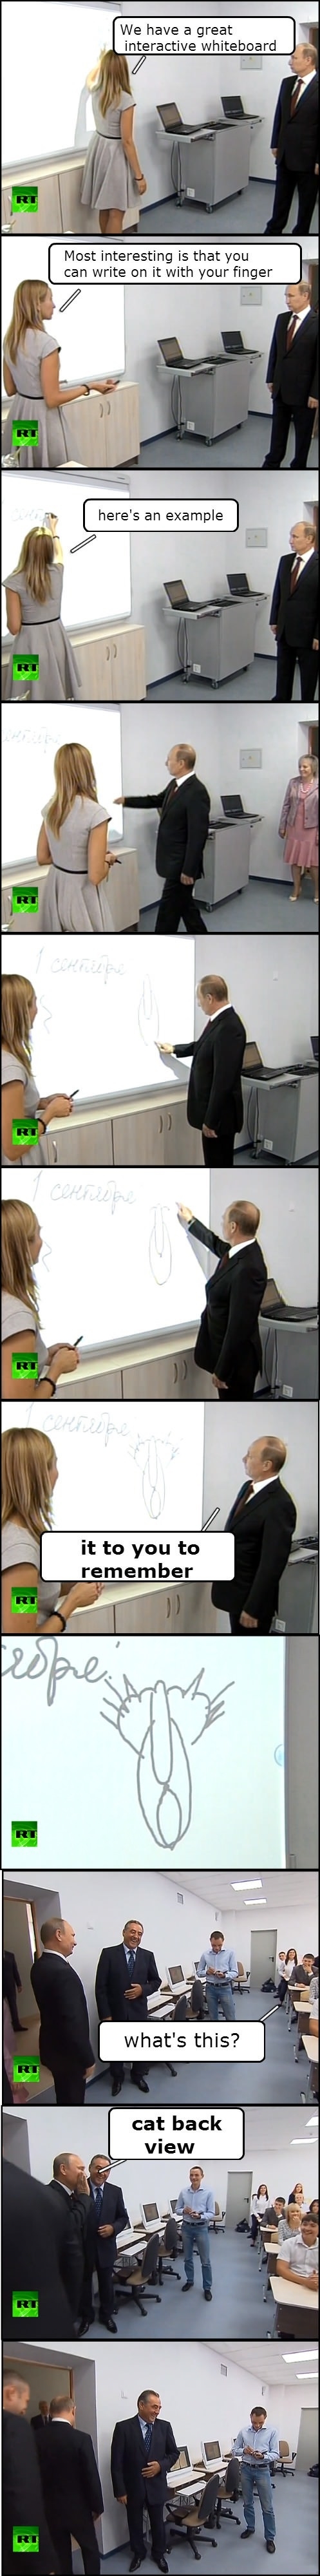 Putin the joker